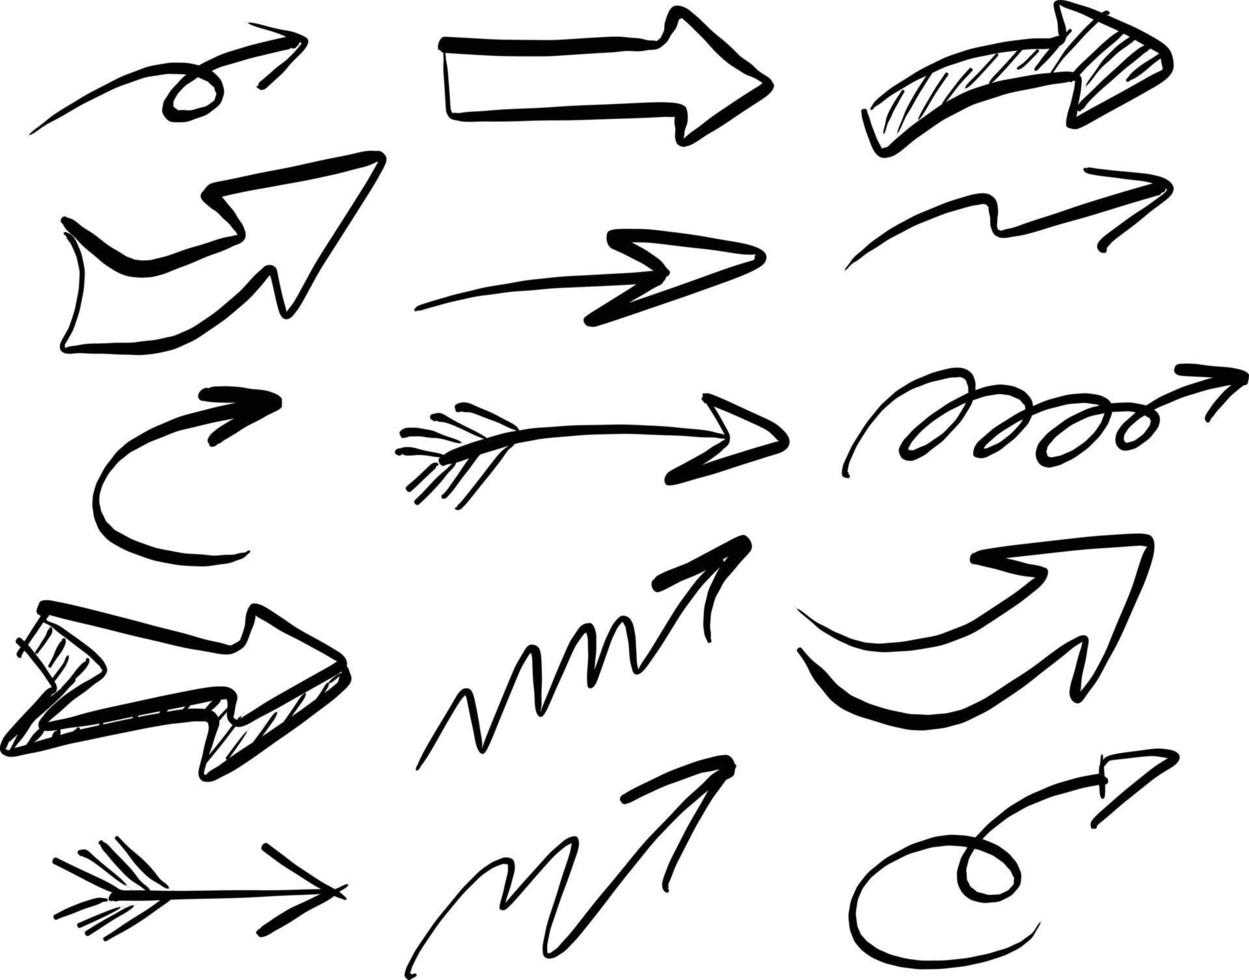 Flèche à main levée set vector illustration croquis dessinés à la main